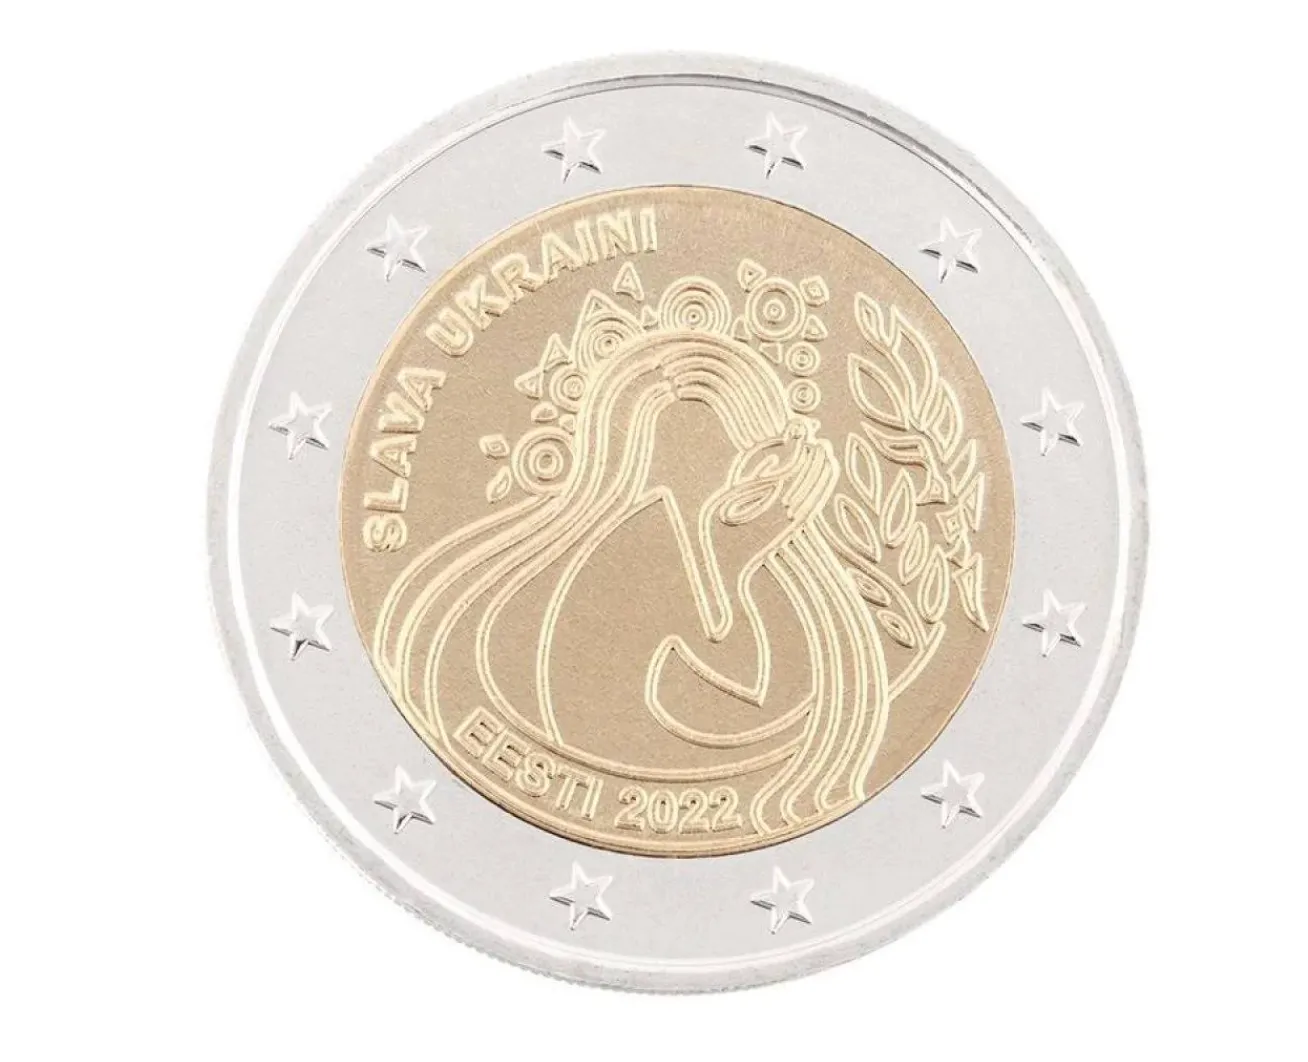 Банк Эстонии использовал монету с надписью